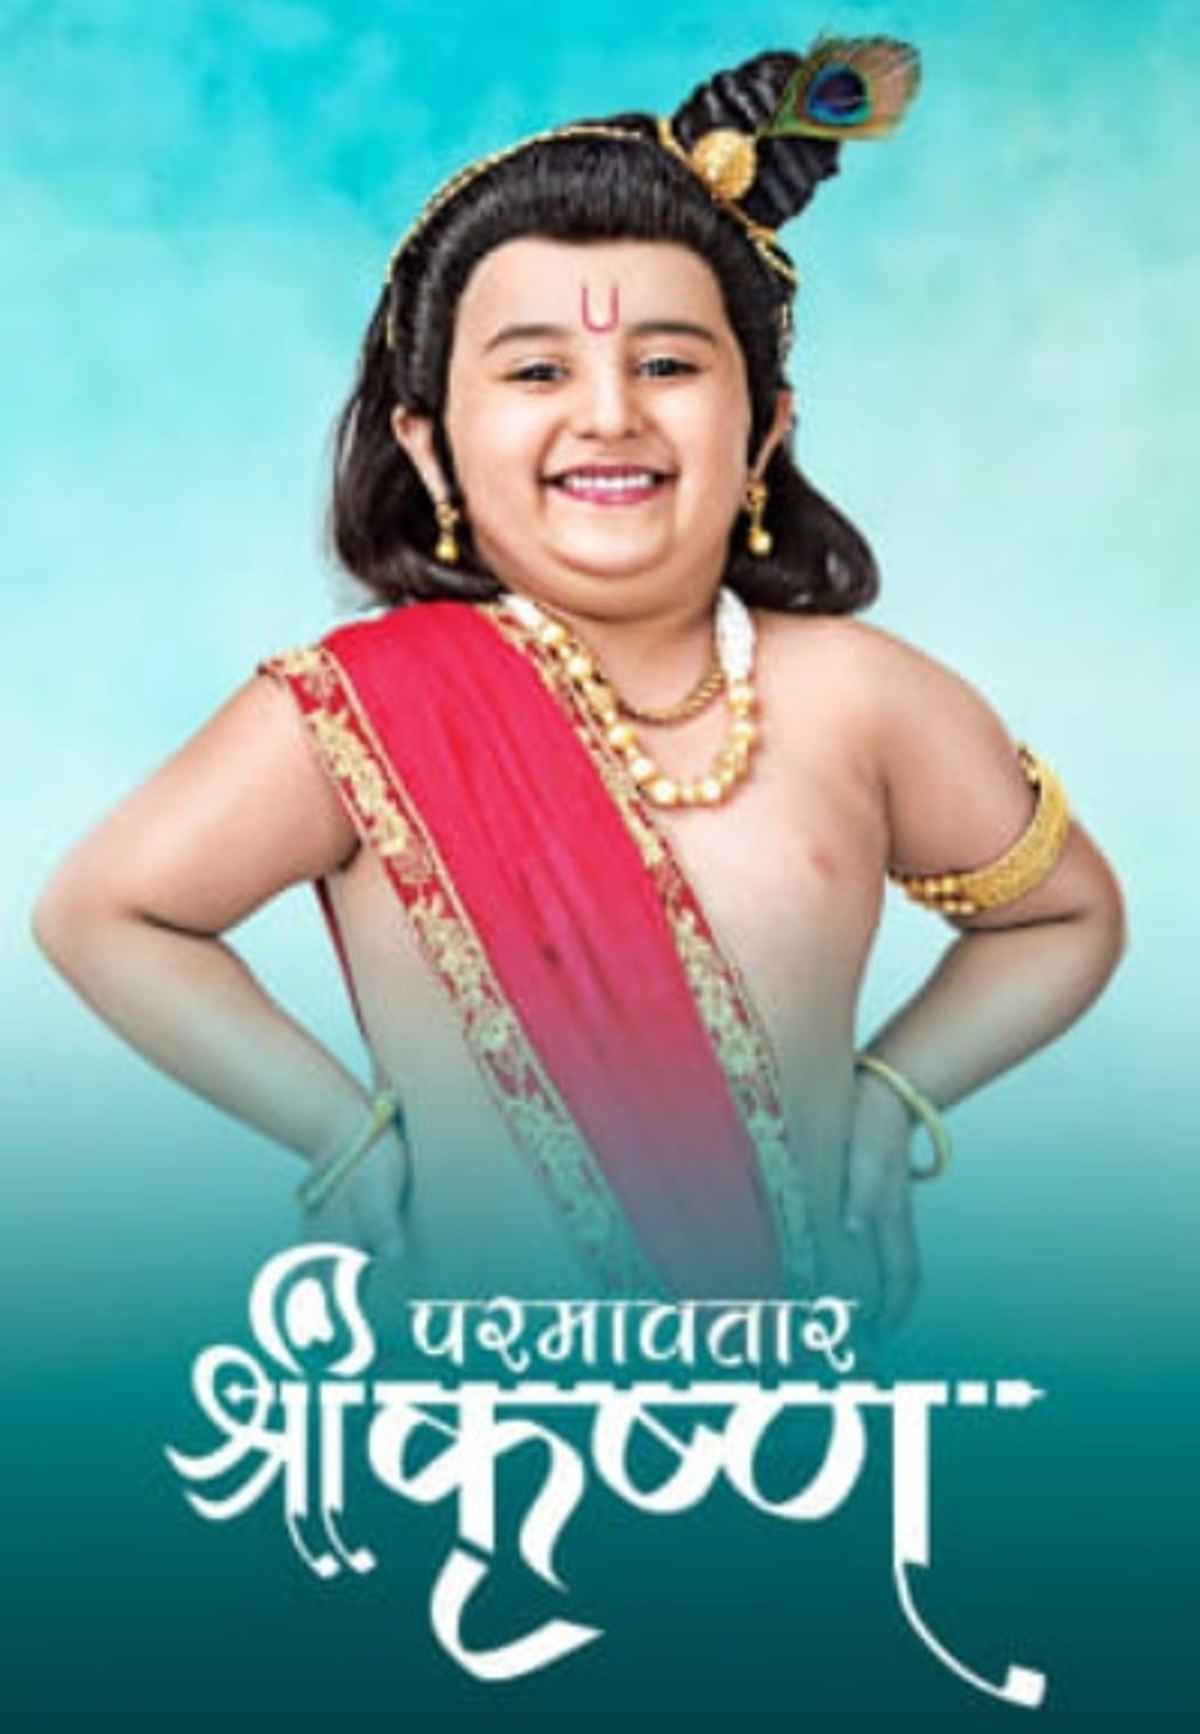 Paramavatar Shri Krishna